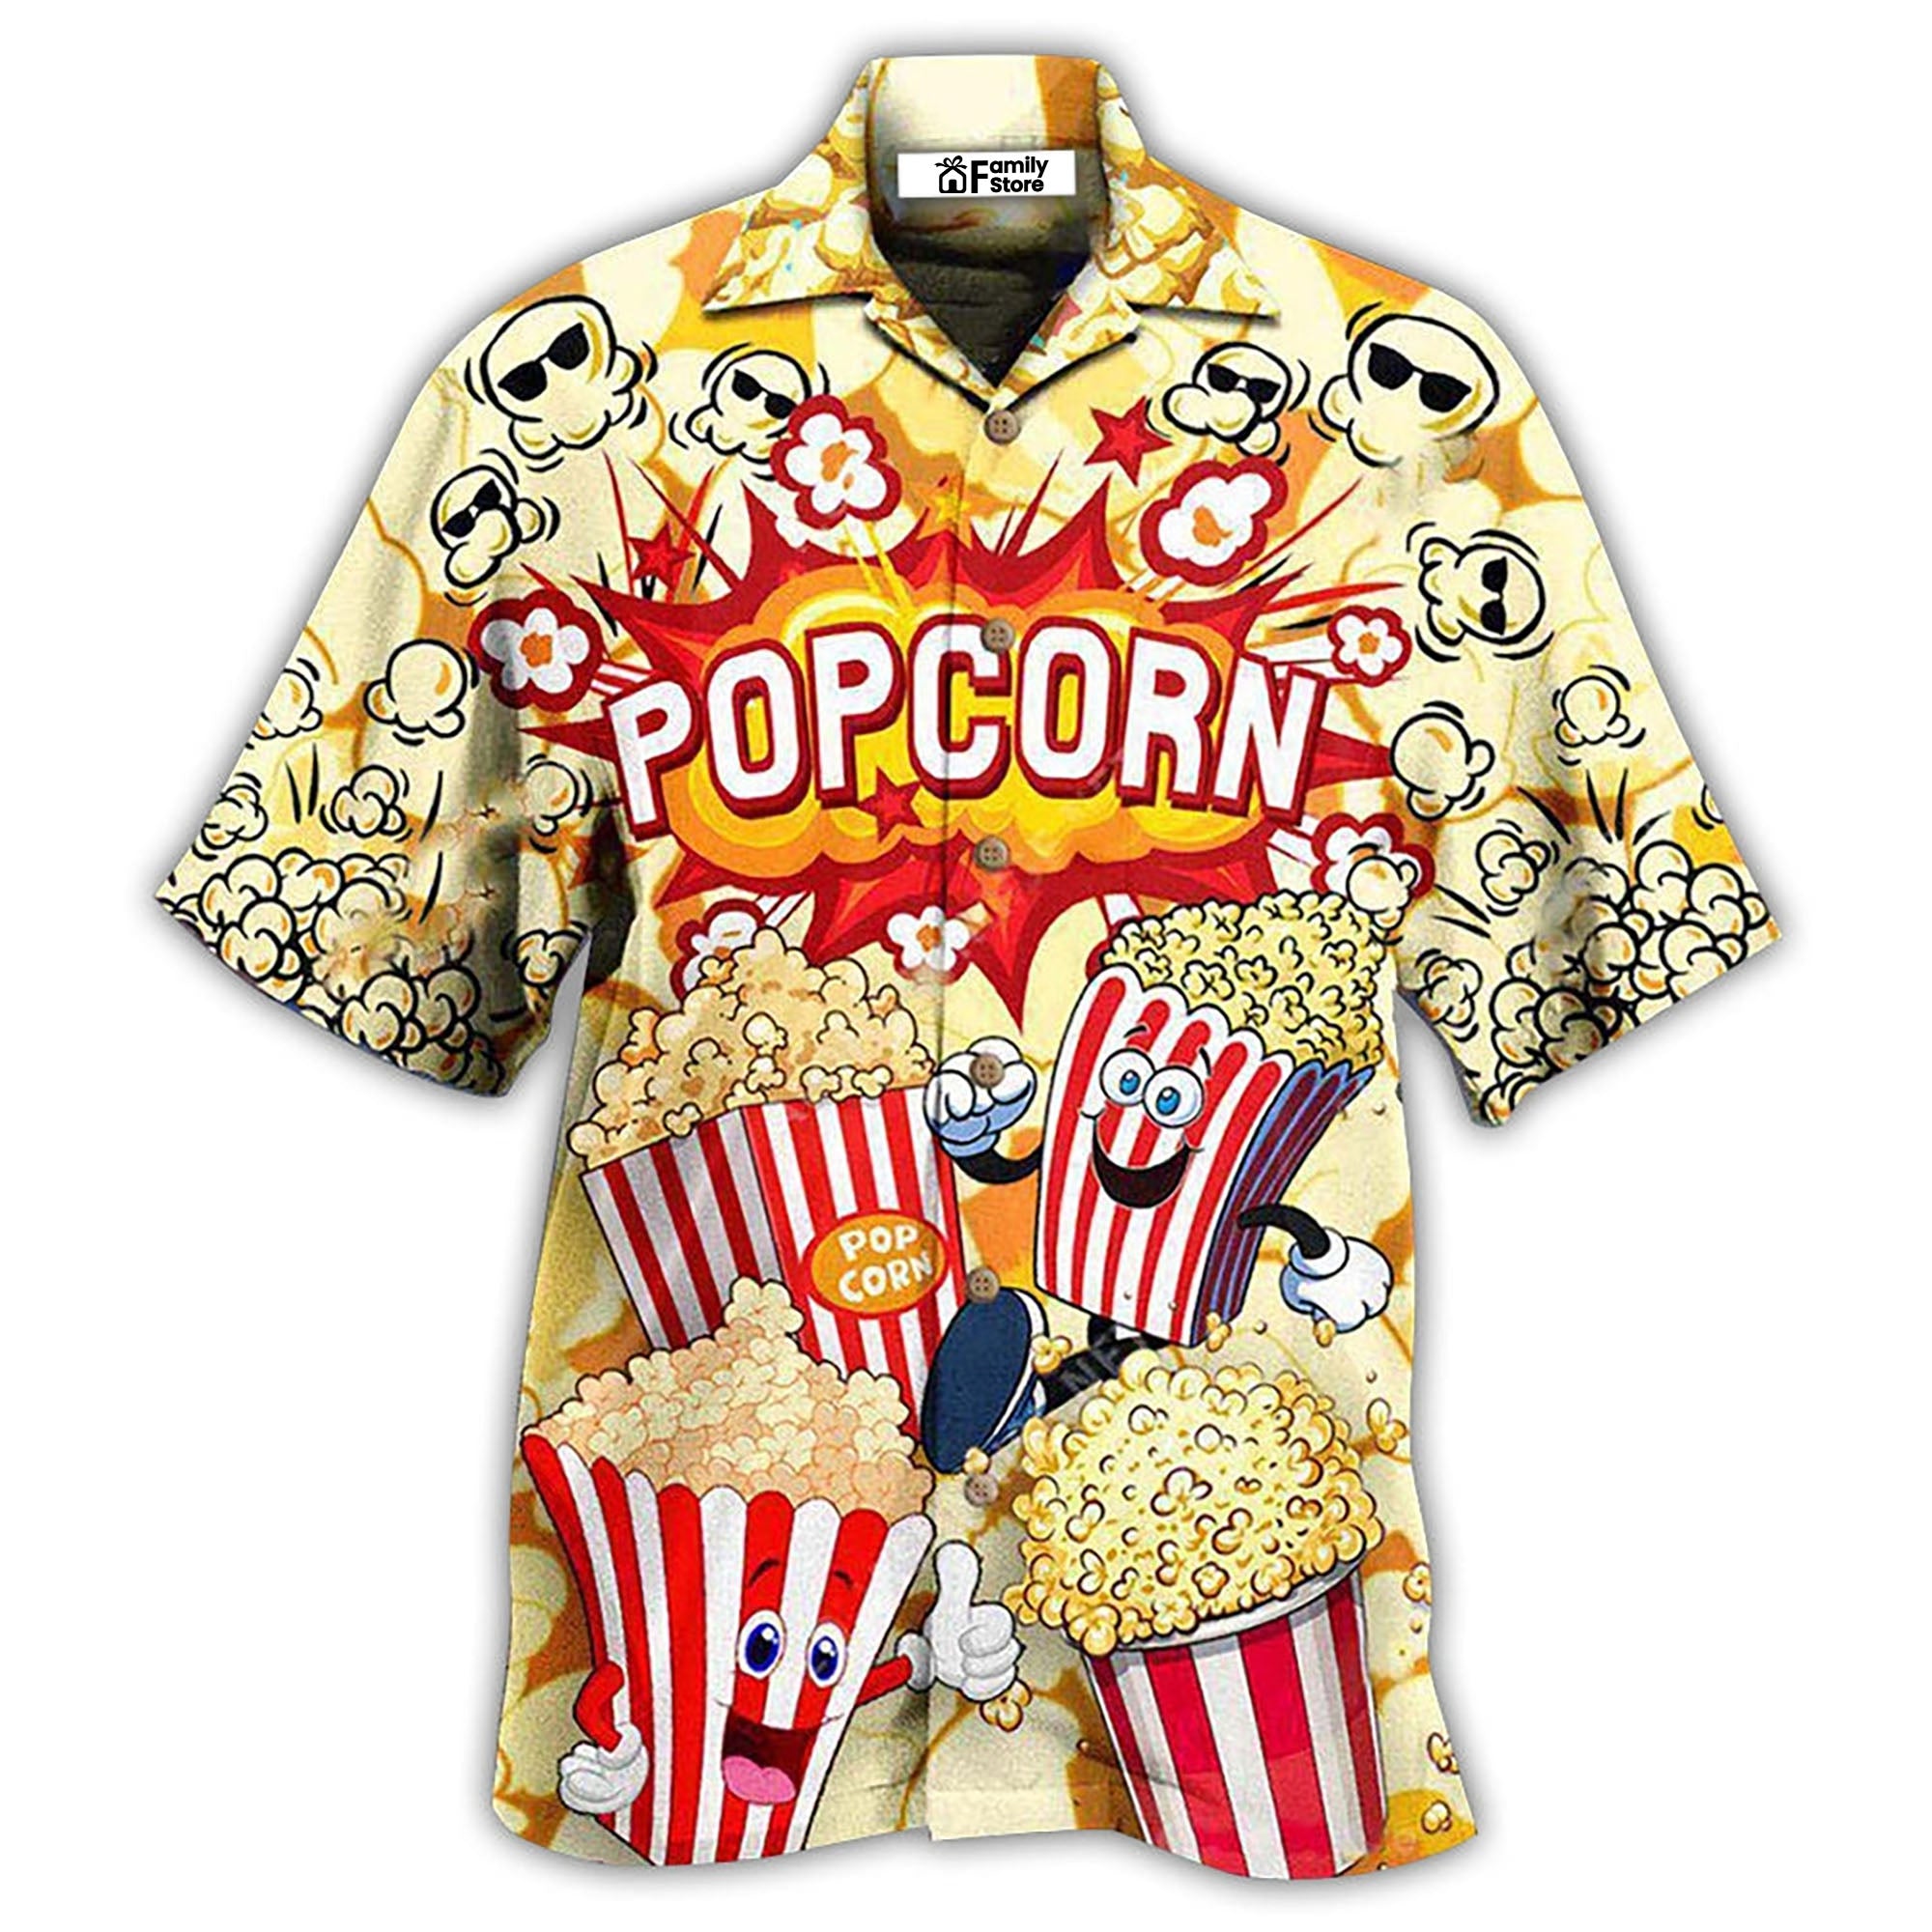 Food Popcorn Is Always The Answer Bang Hawaiian Shirt